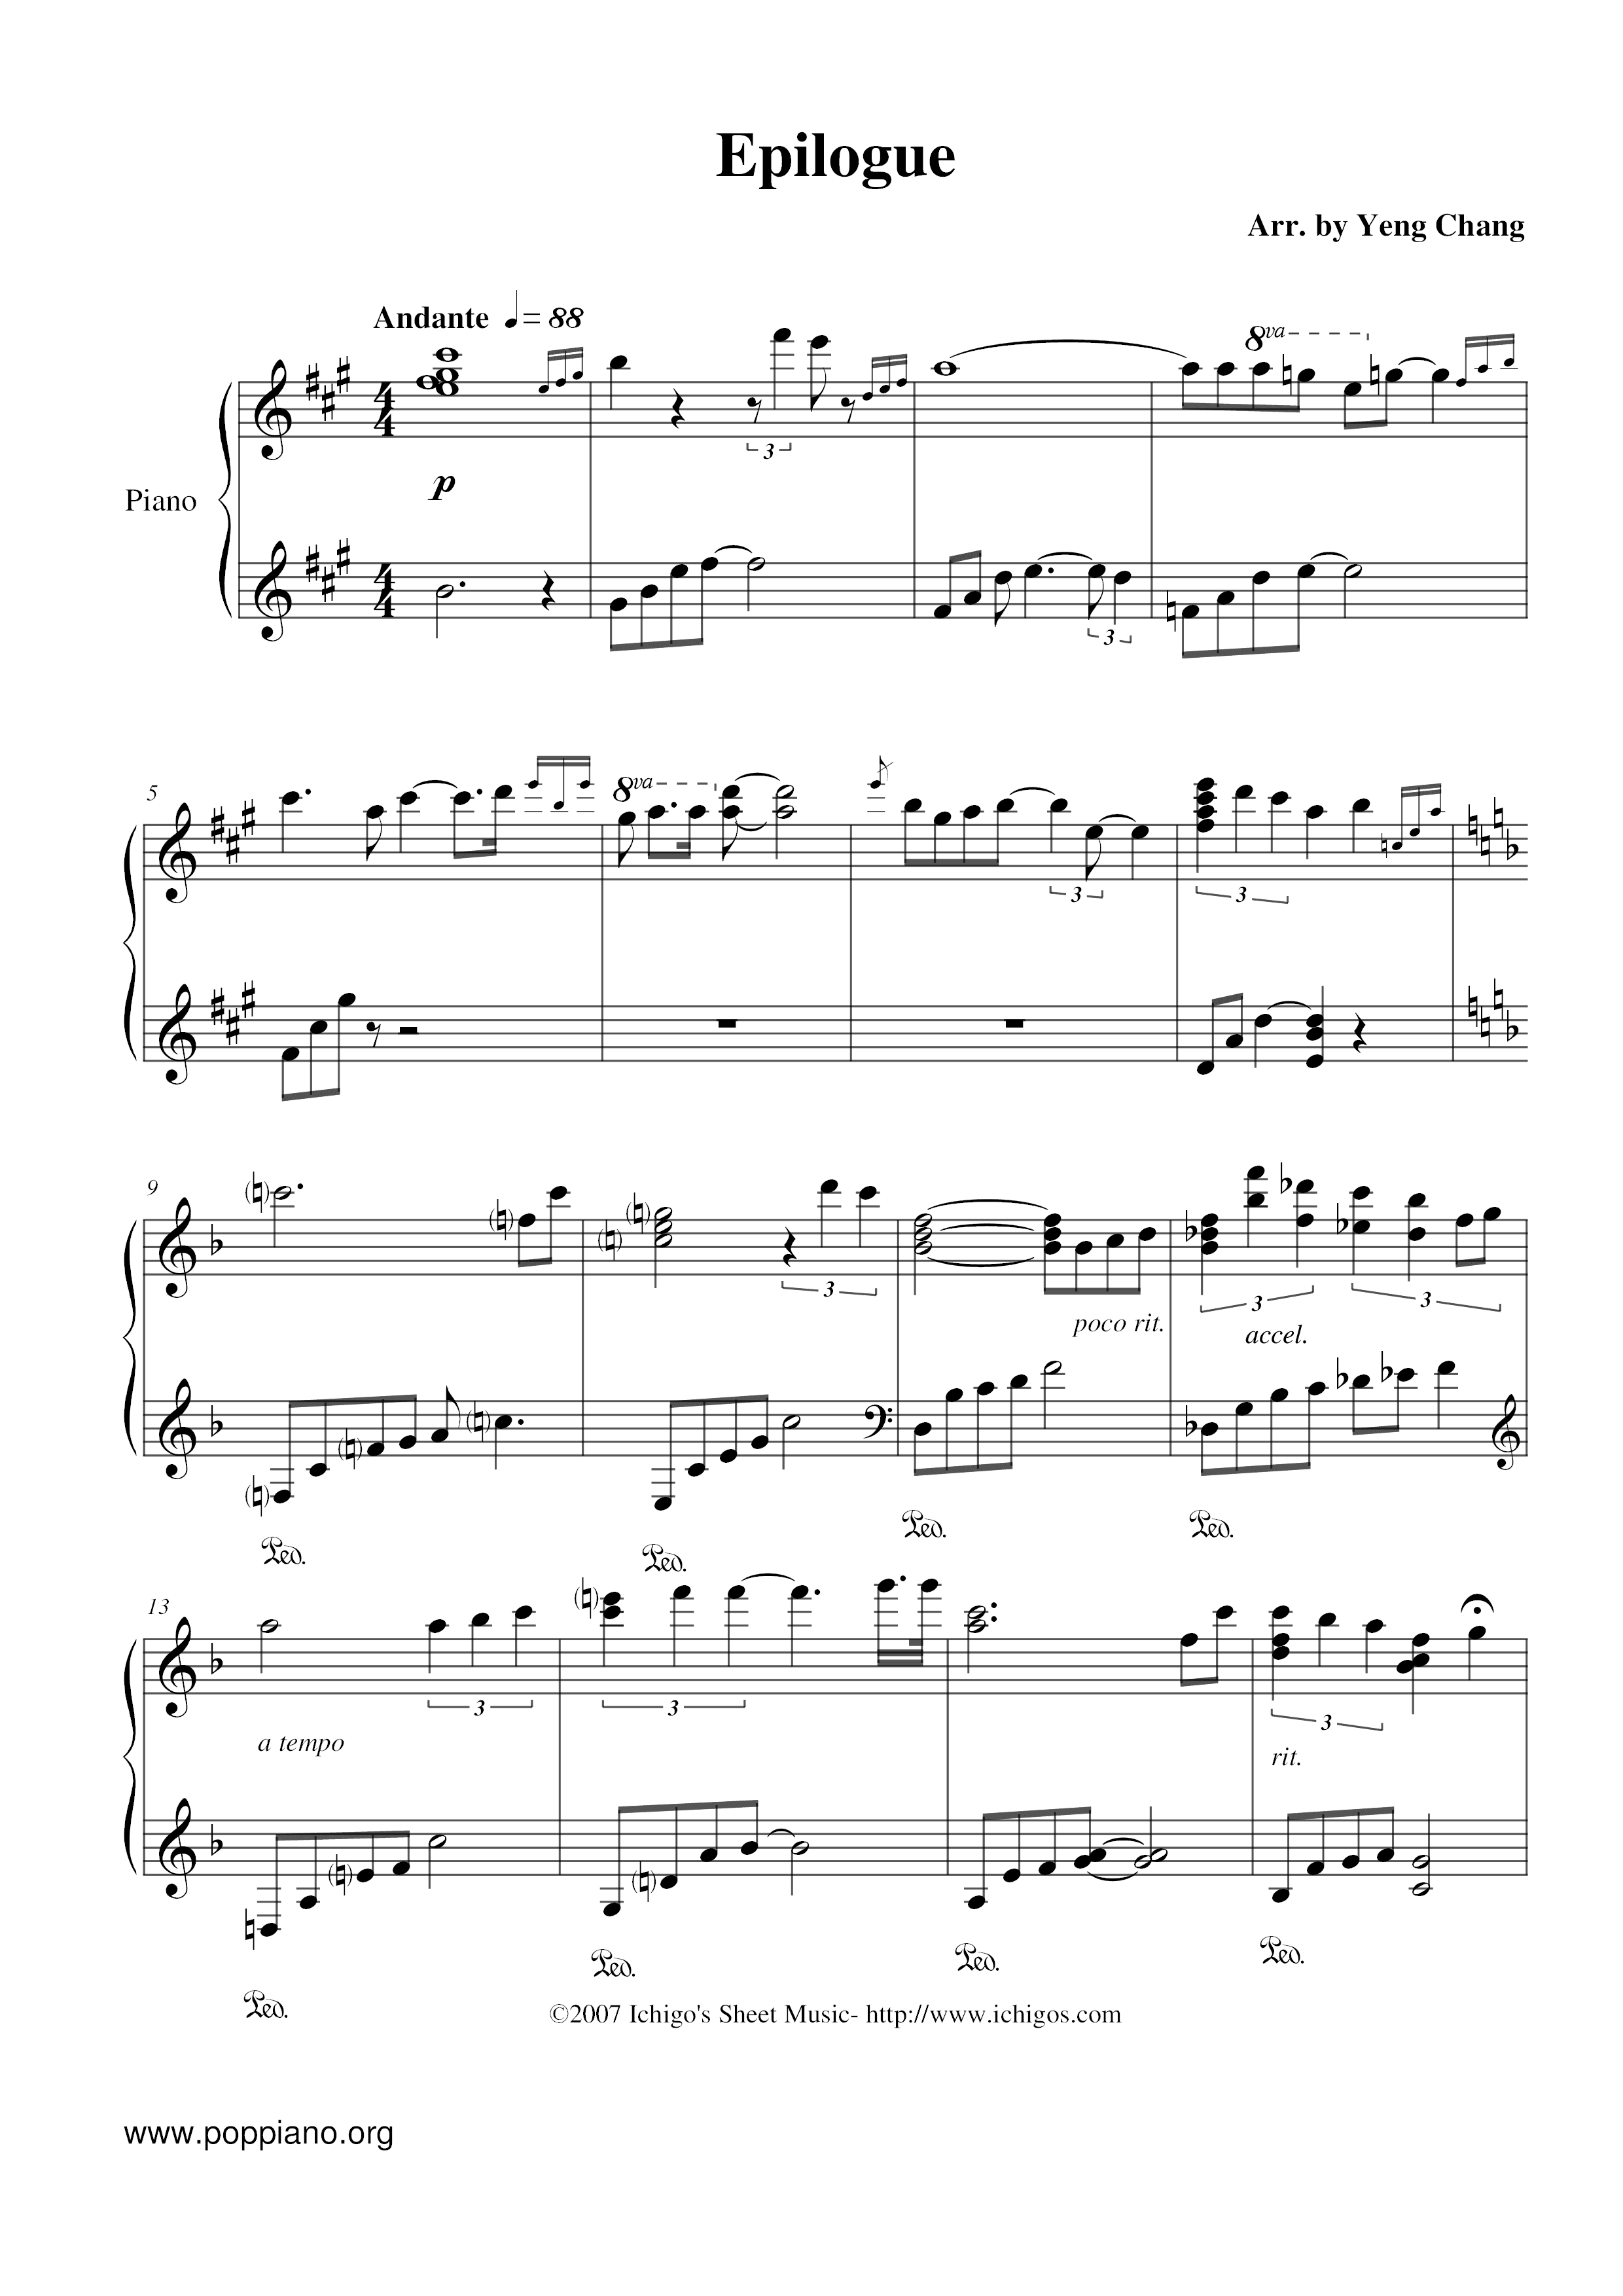 Epilogue Score